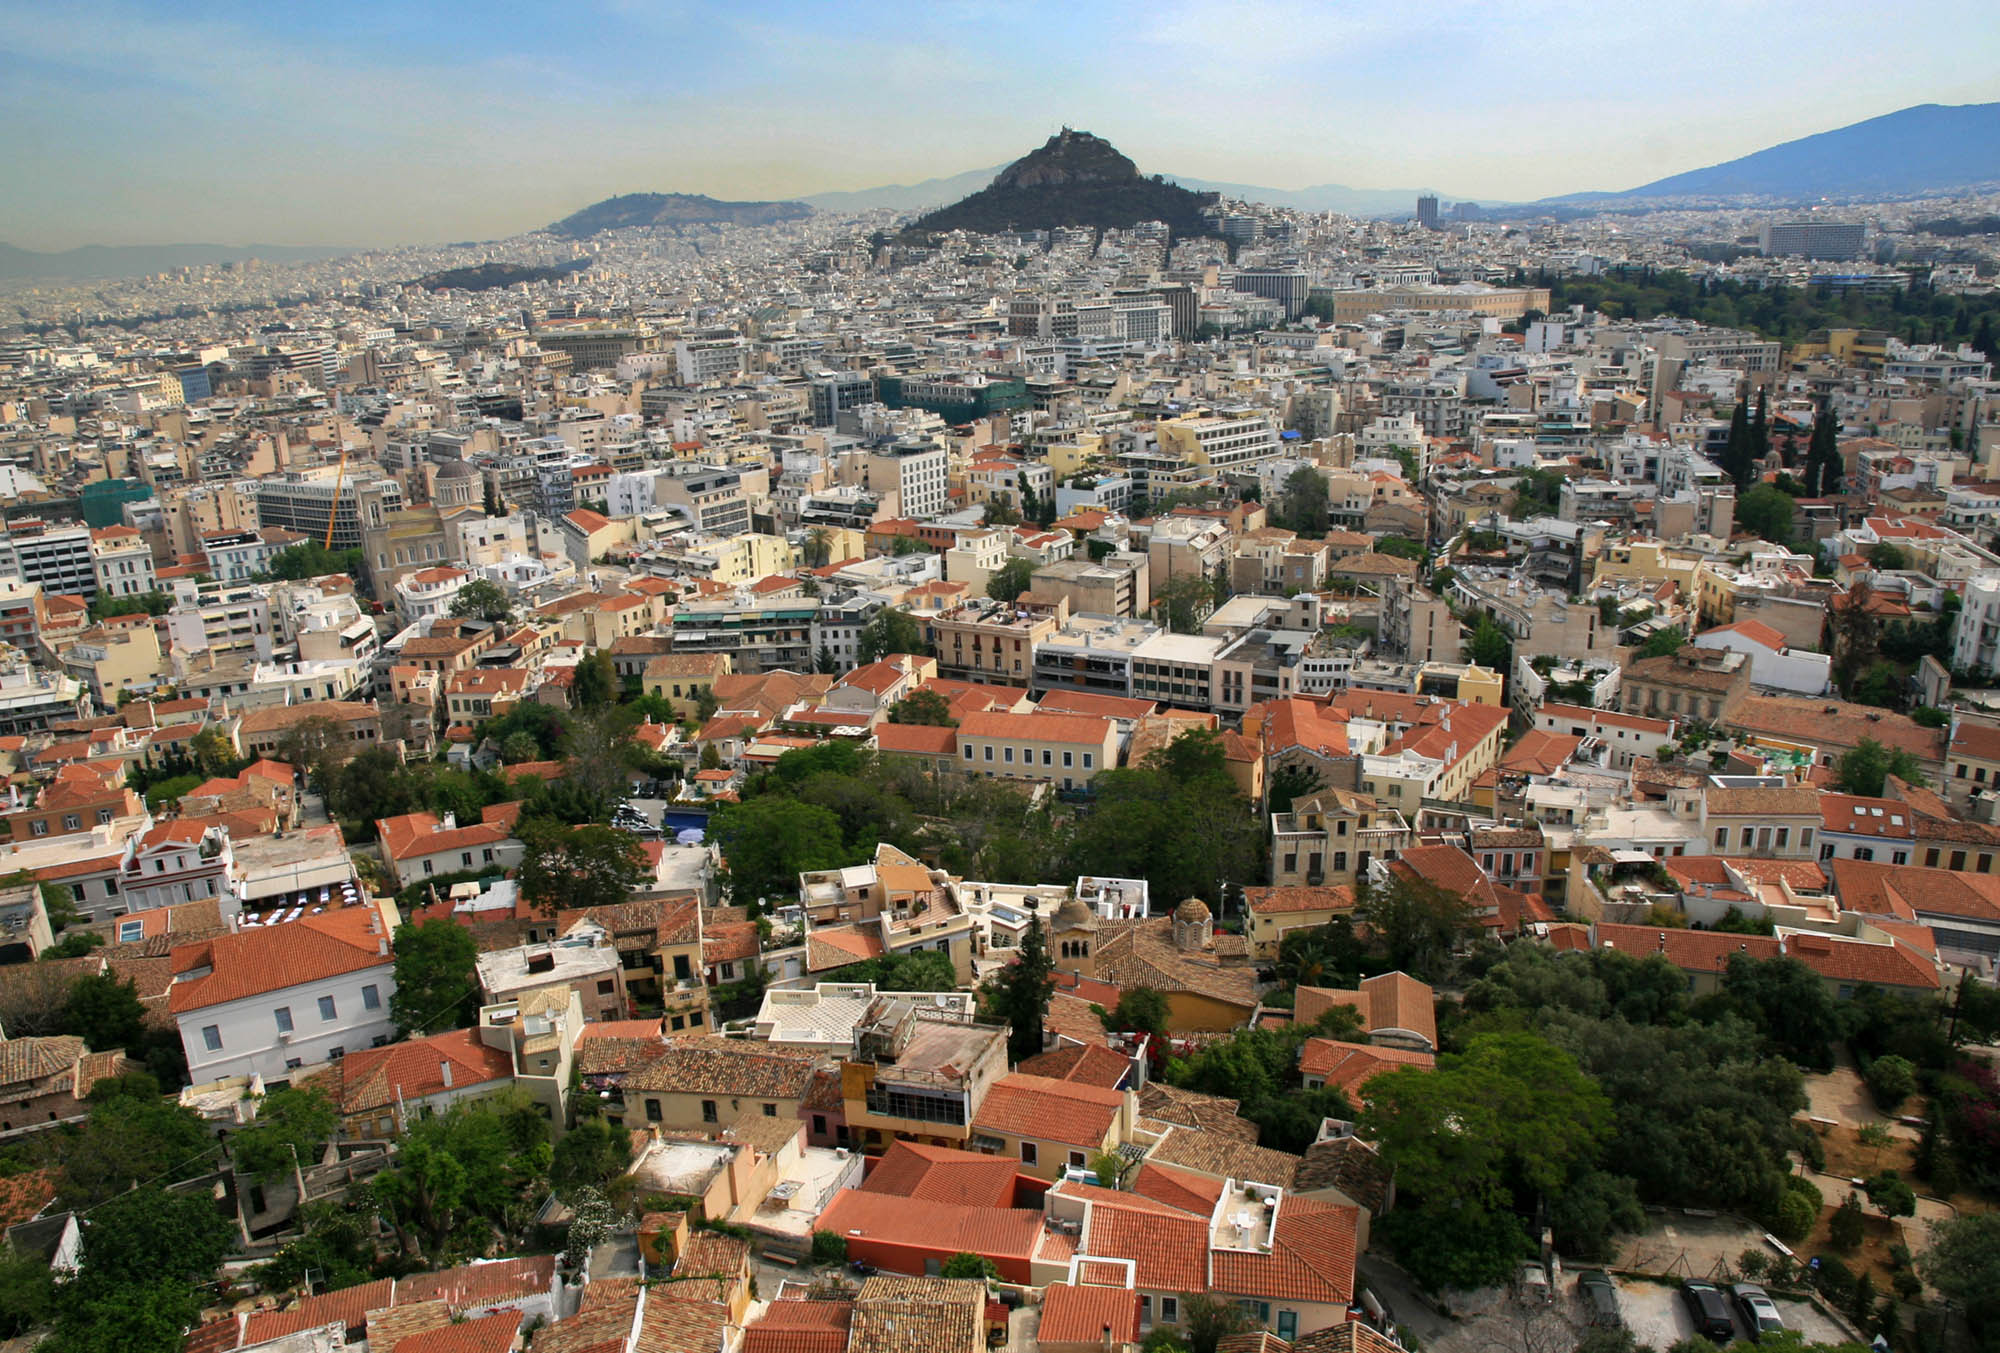 Panorama, widok na miasto z góry, z lotu ptaka, może dachów a w tle wzgórze